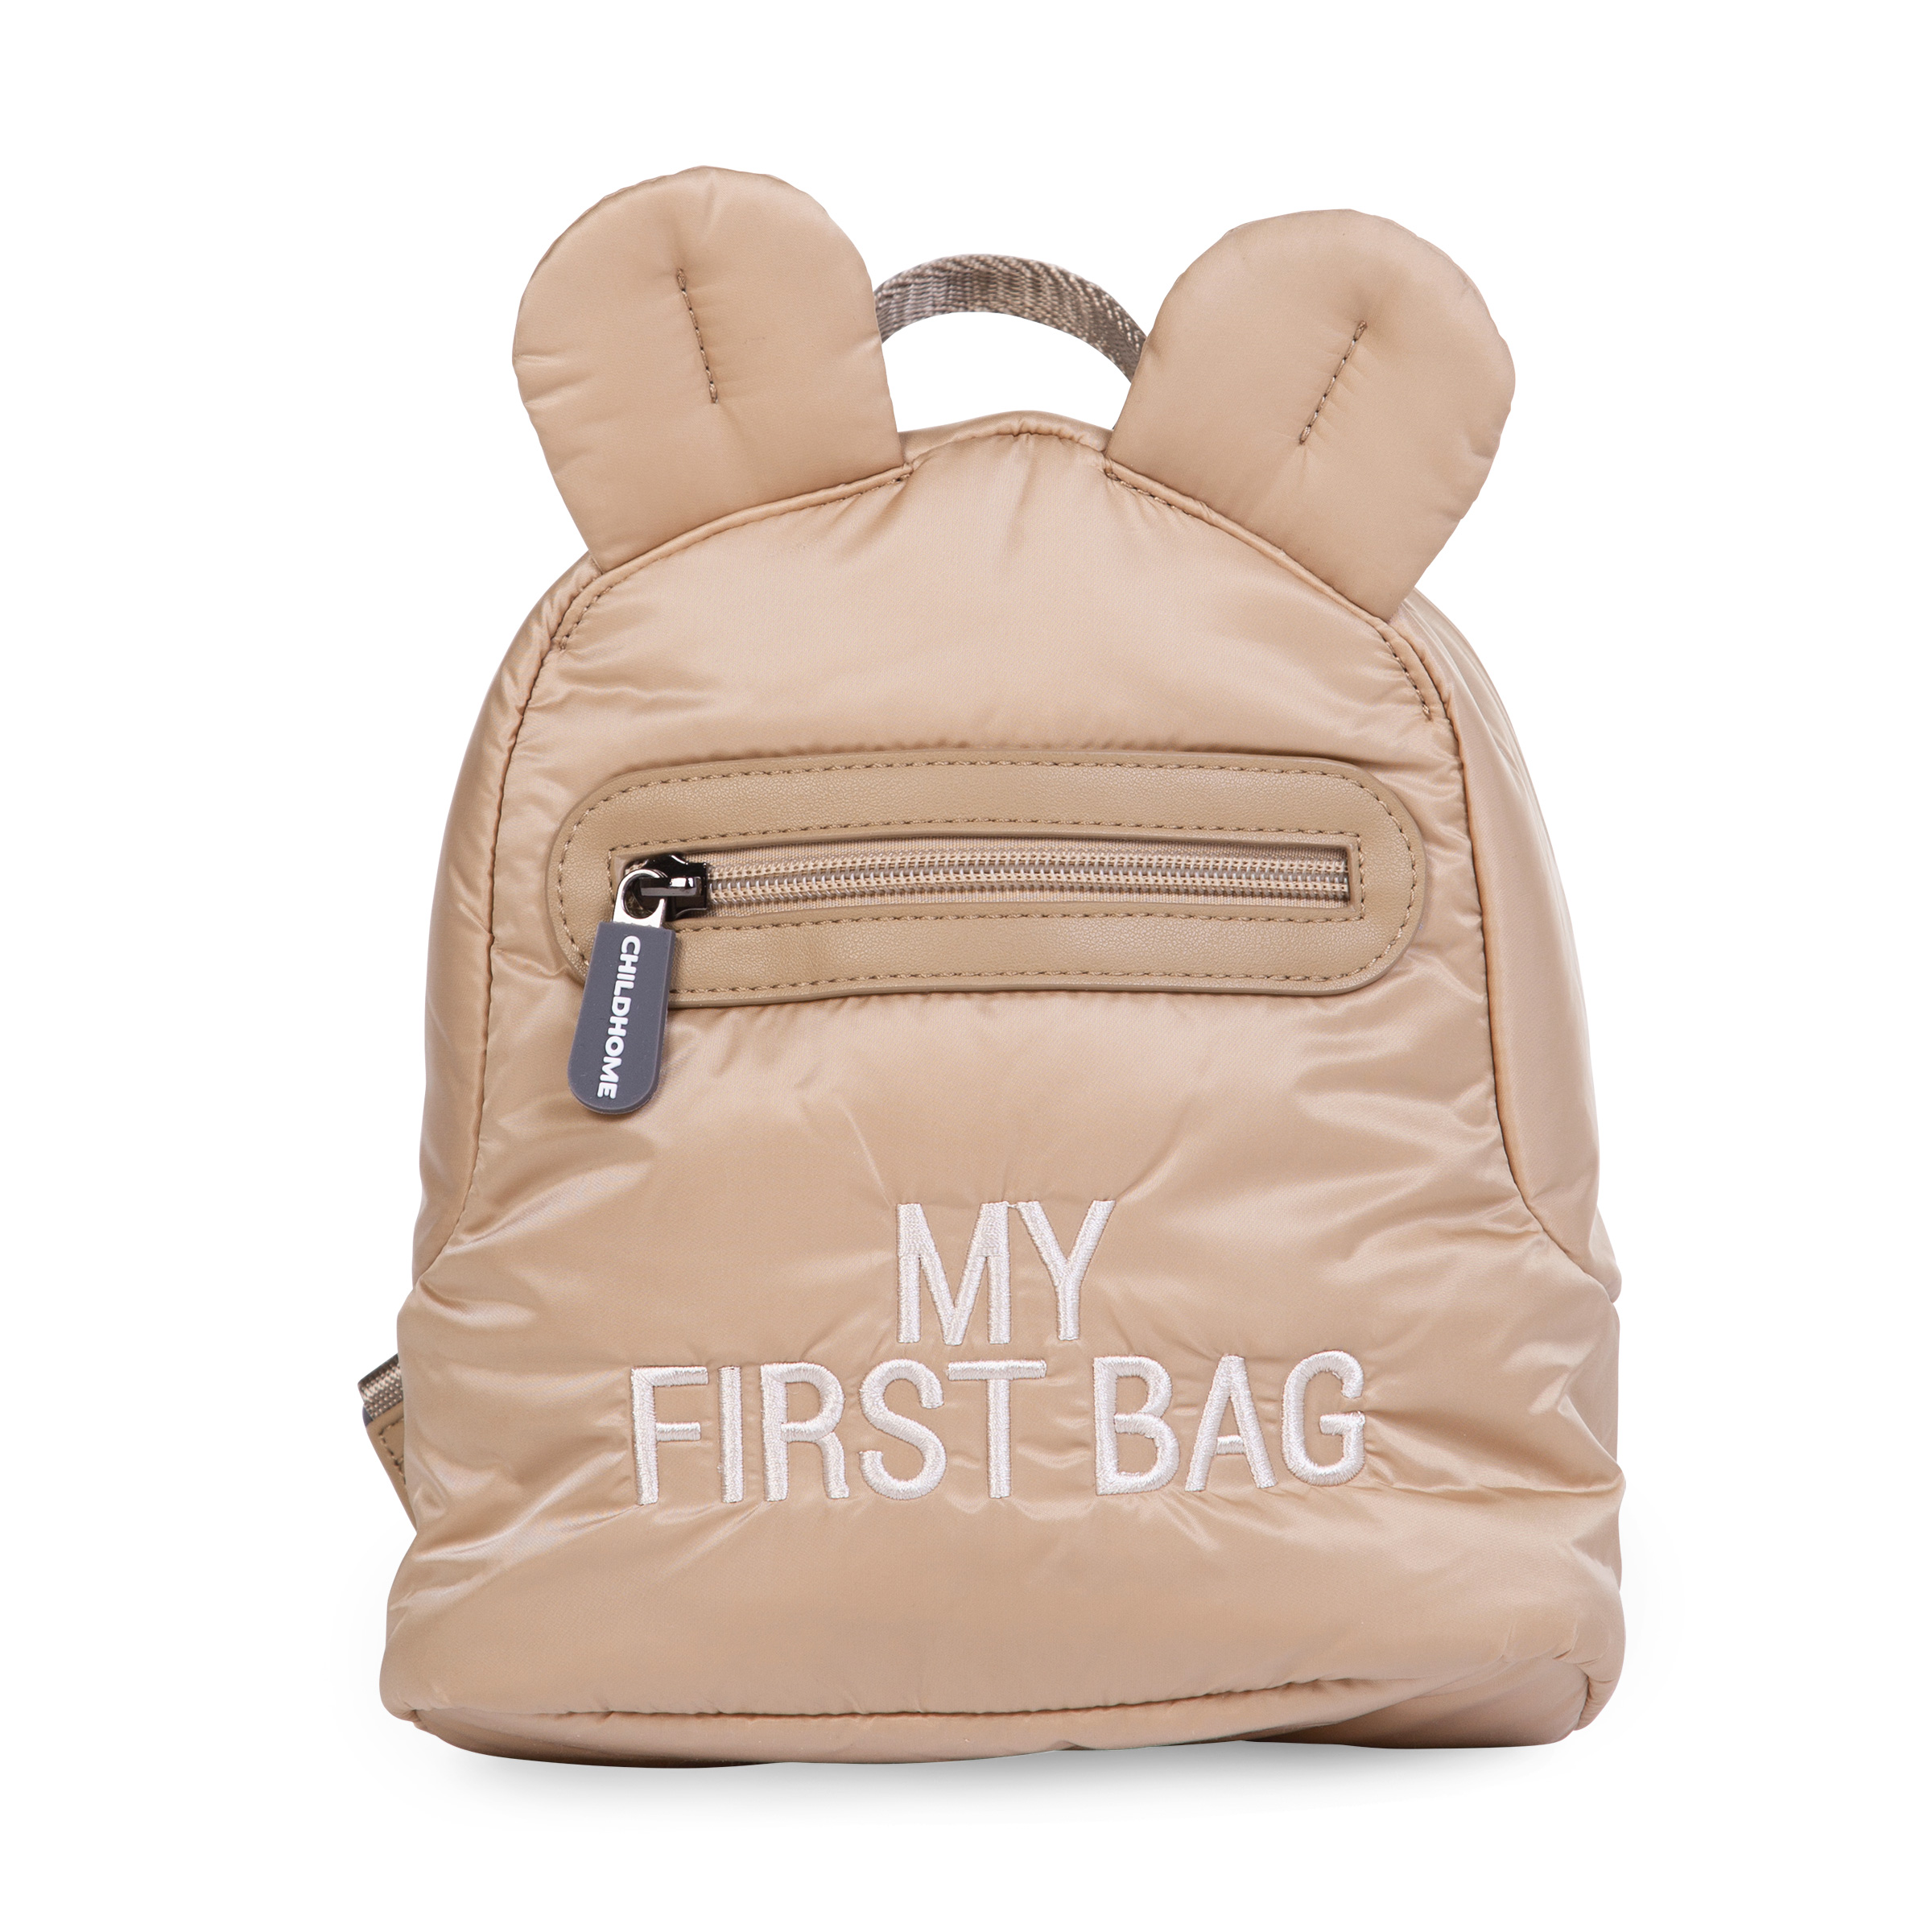 My First Bag Sac A Dos Pour Enfants - Matelassé - Beige